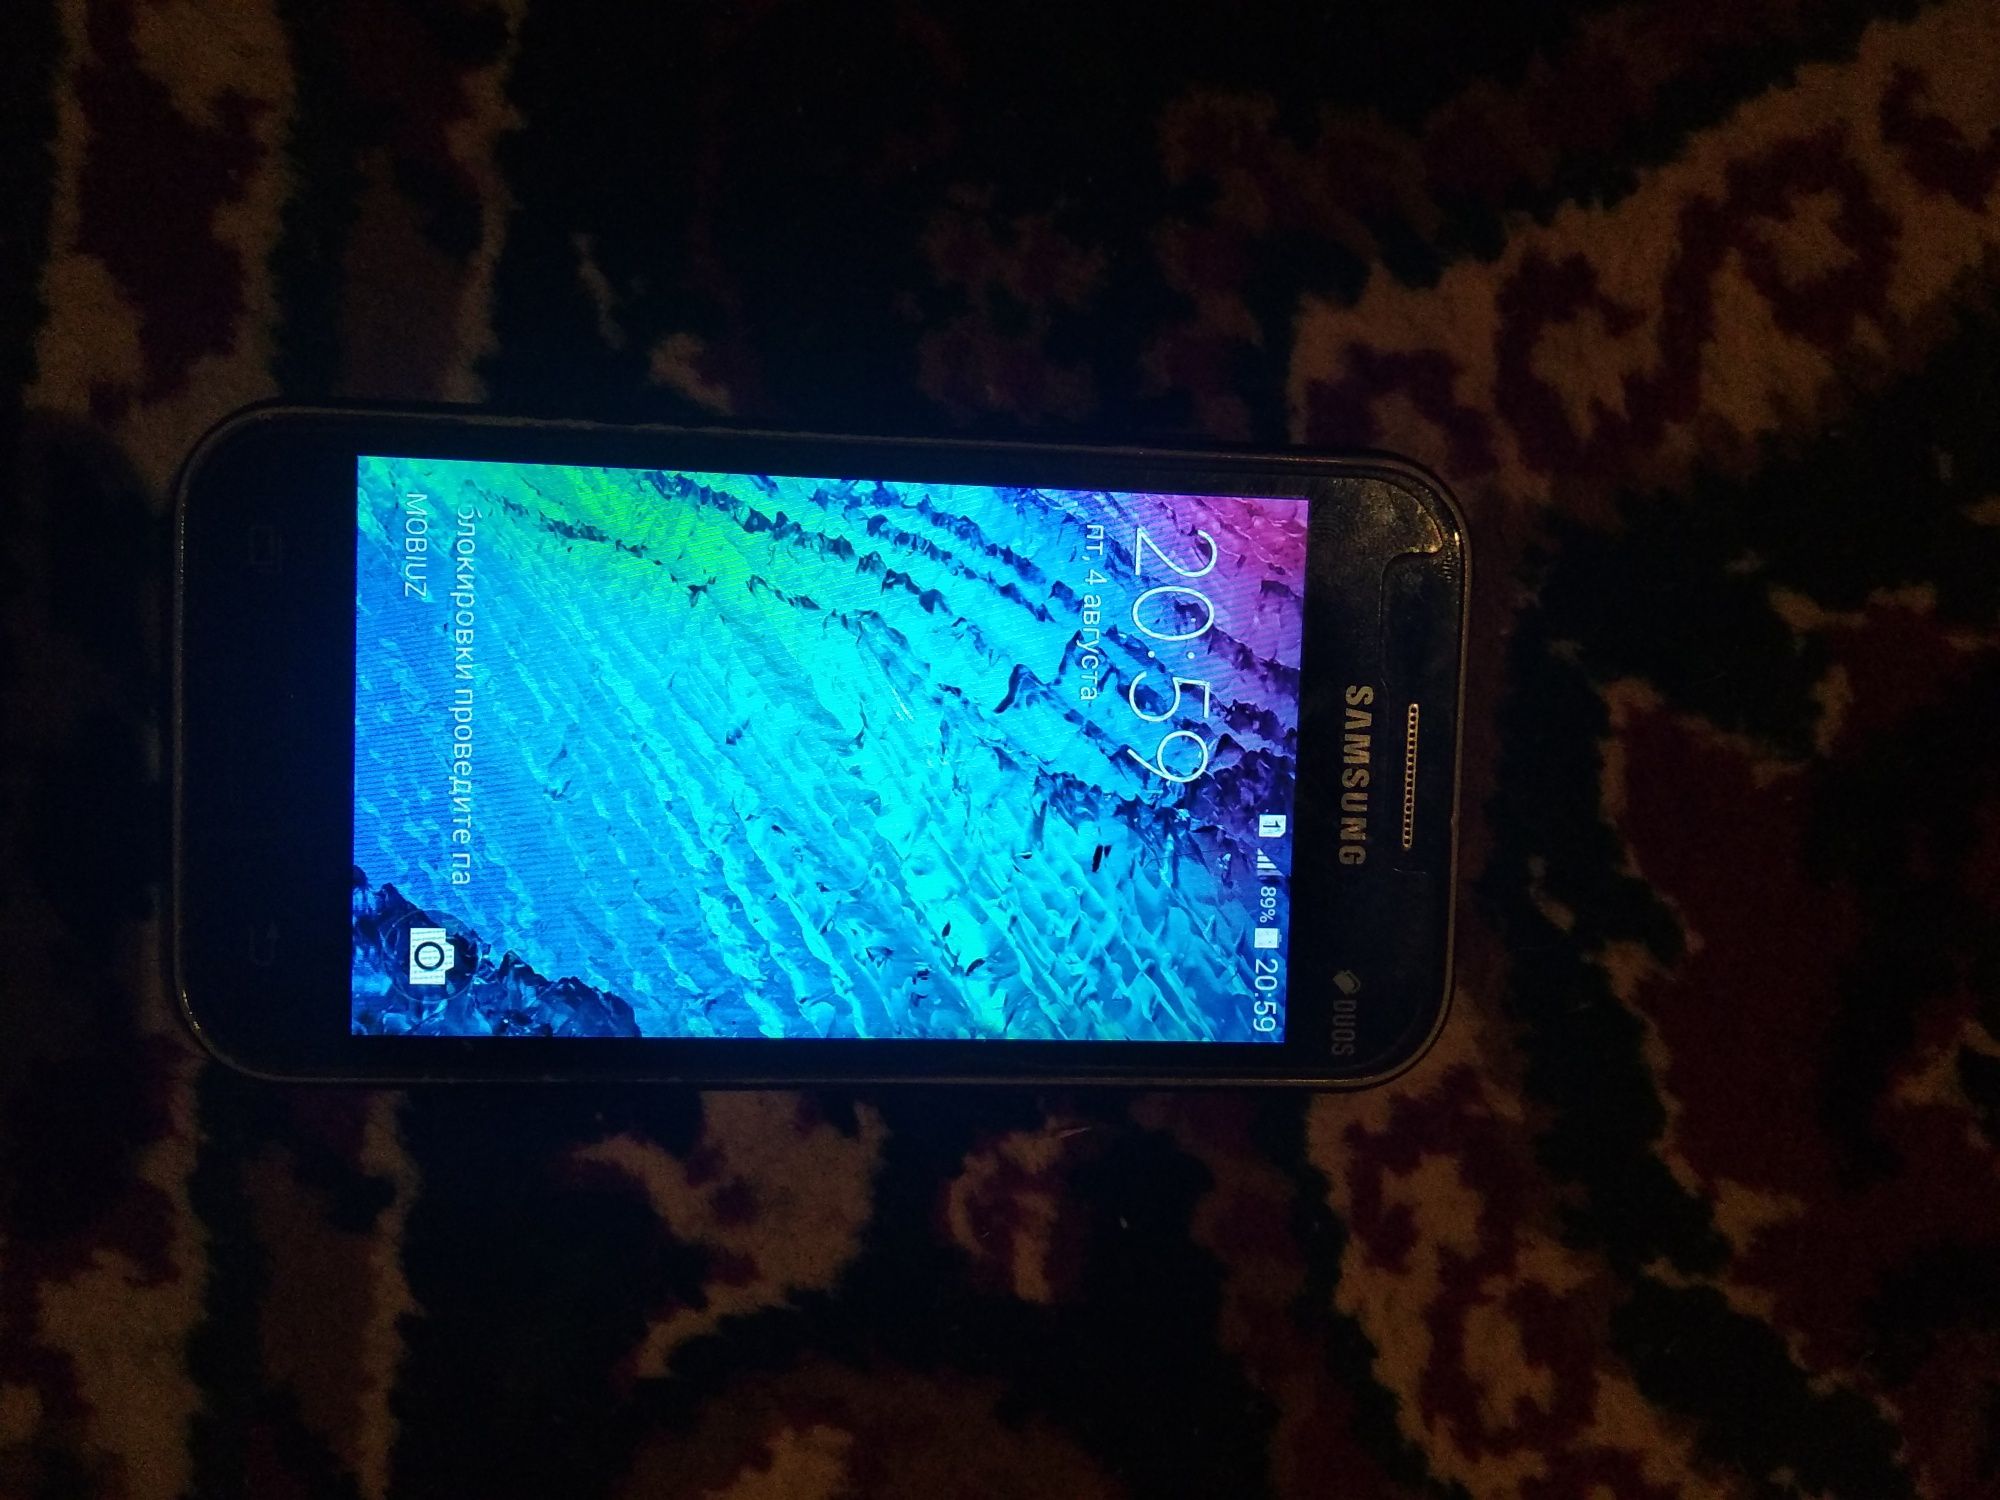 Samsung galaxy j 1